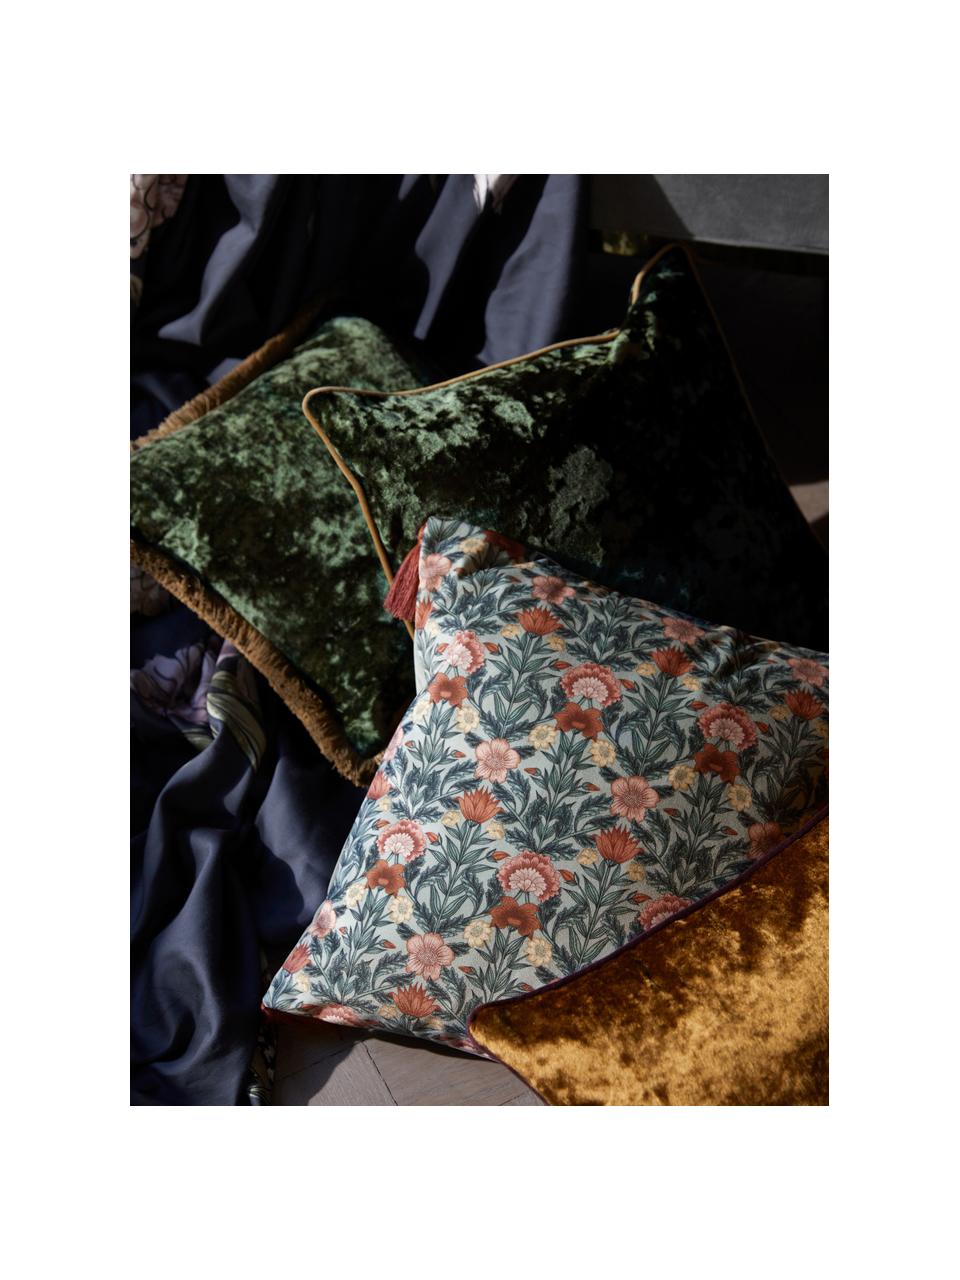 Federa arredo in velluto blu scuro con motivo floreale e nappe Pari, Verde salvia, rosa, giallo, Larg. 45 x Lung. 45 cm